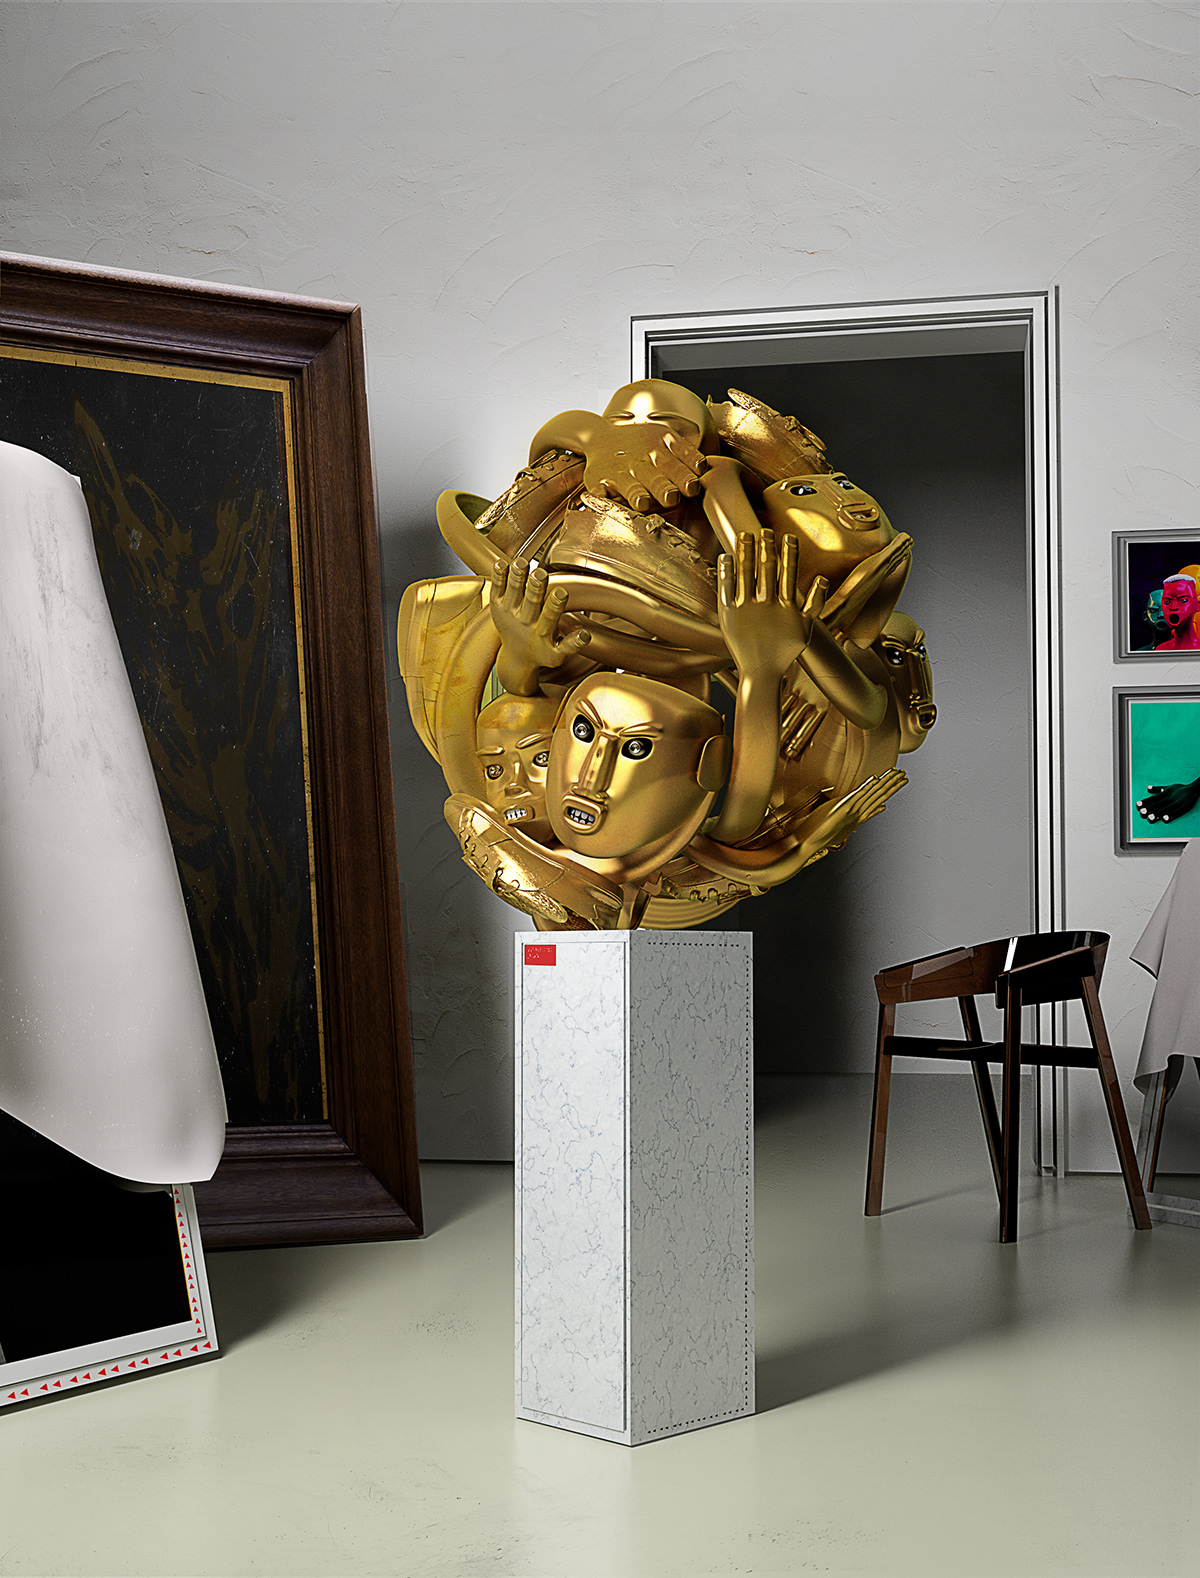 Exhibition  3D cinema4d house architecture ILLUSTRATION  painting   sculpture gold concept